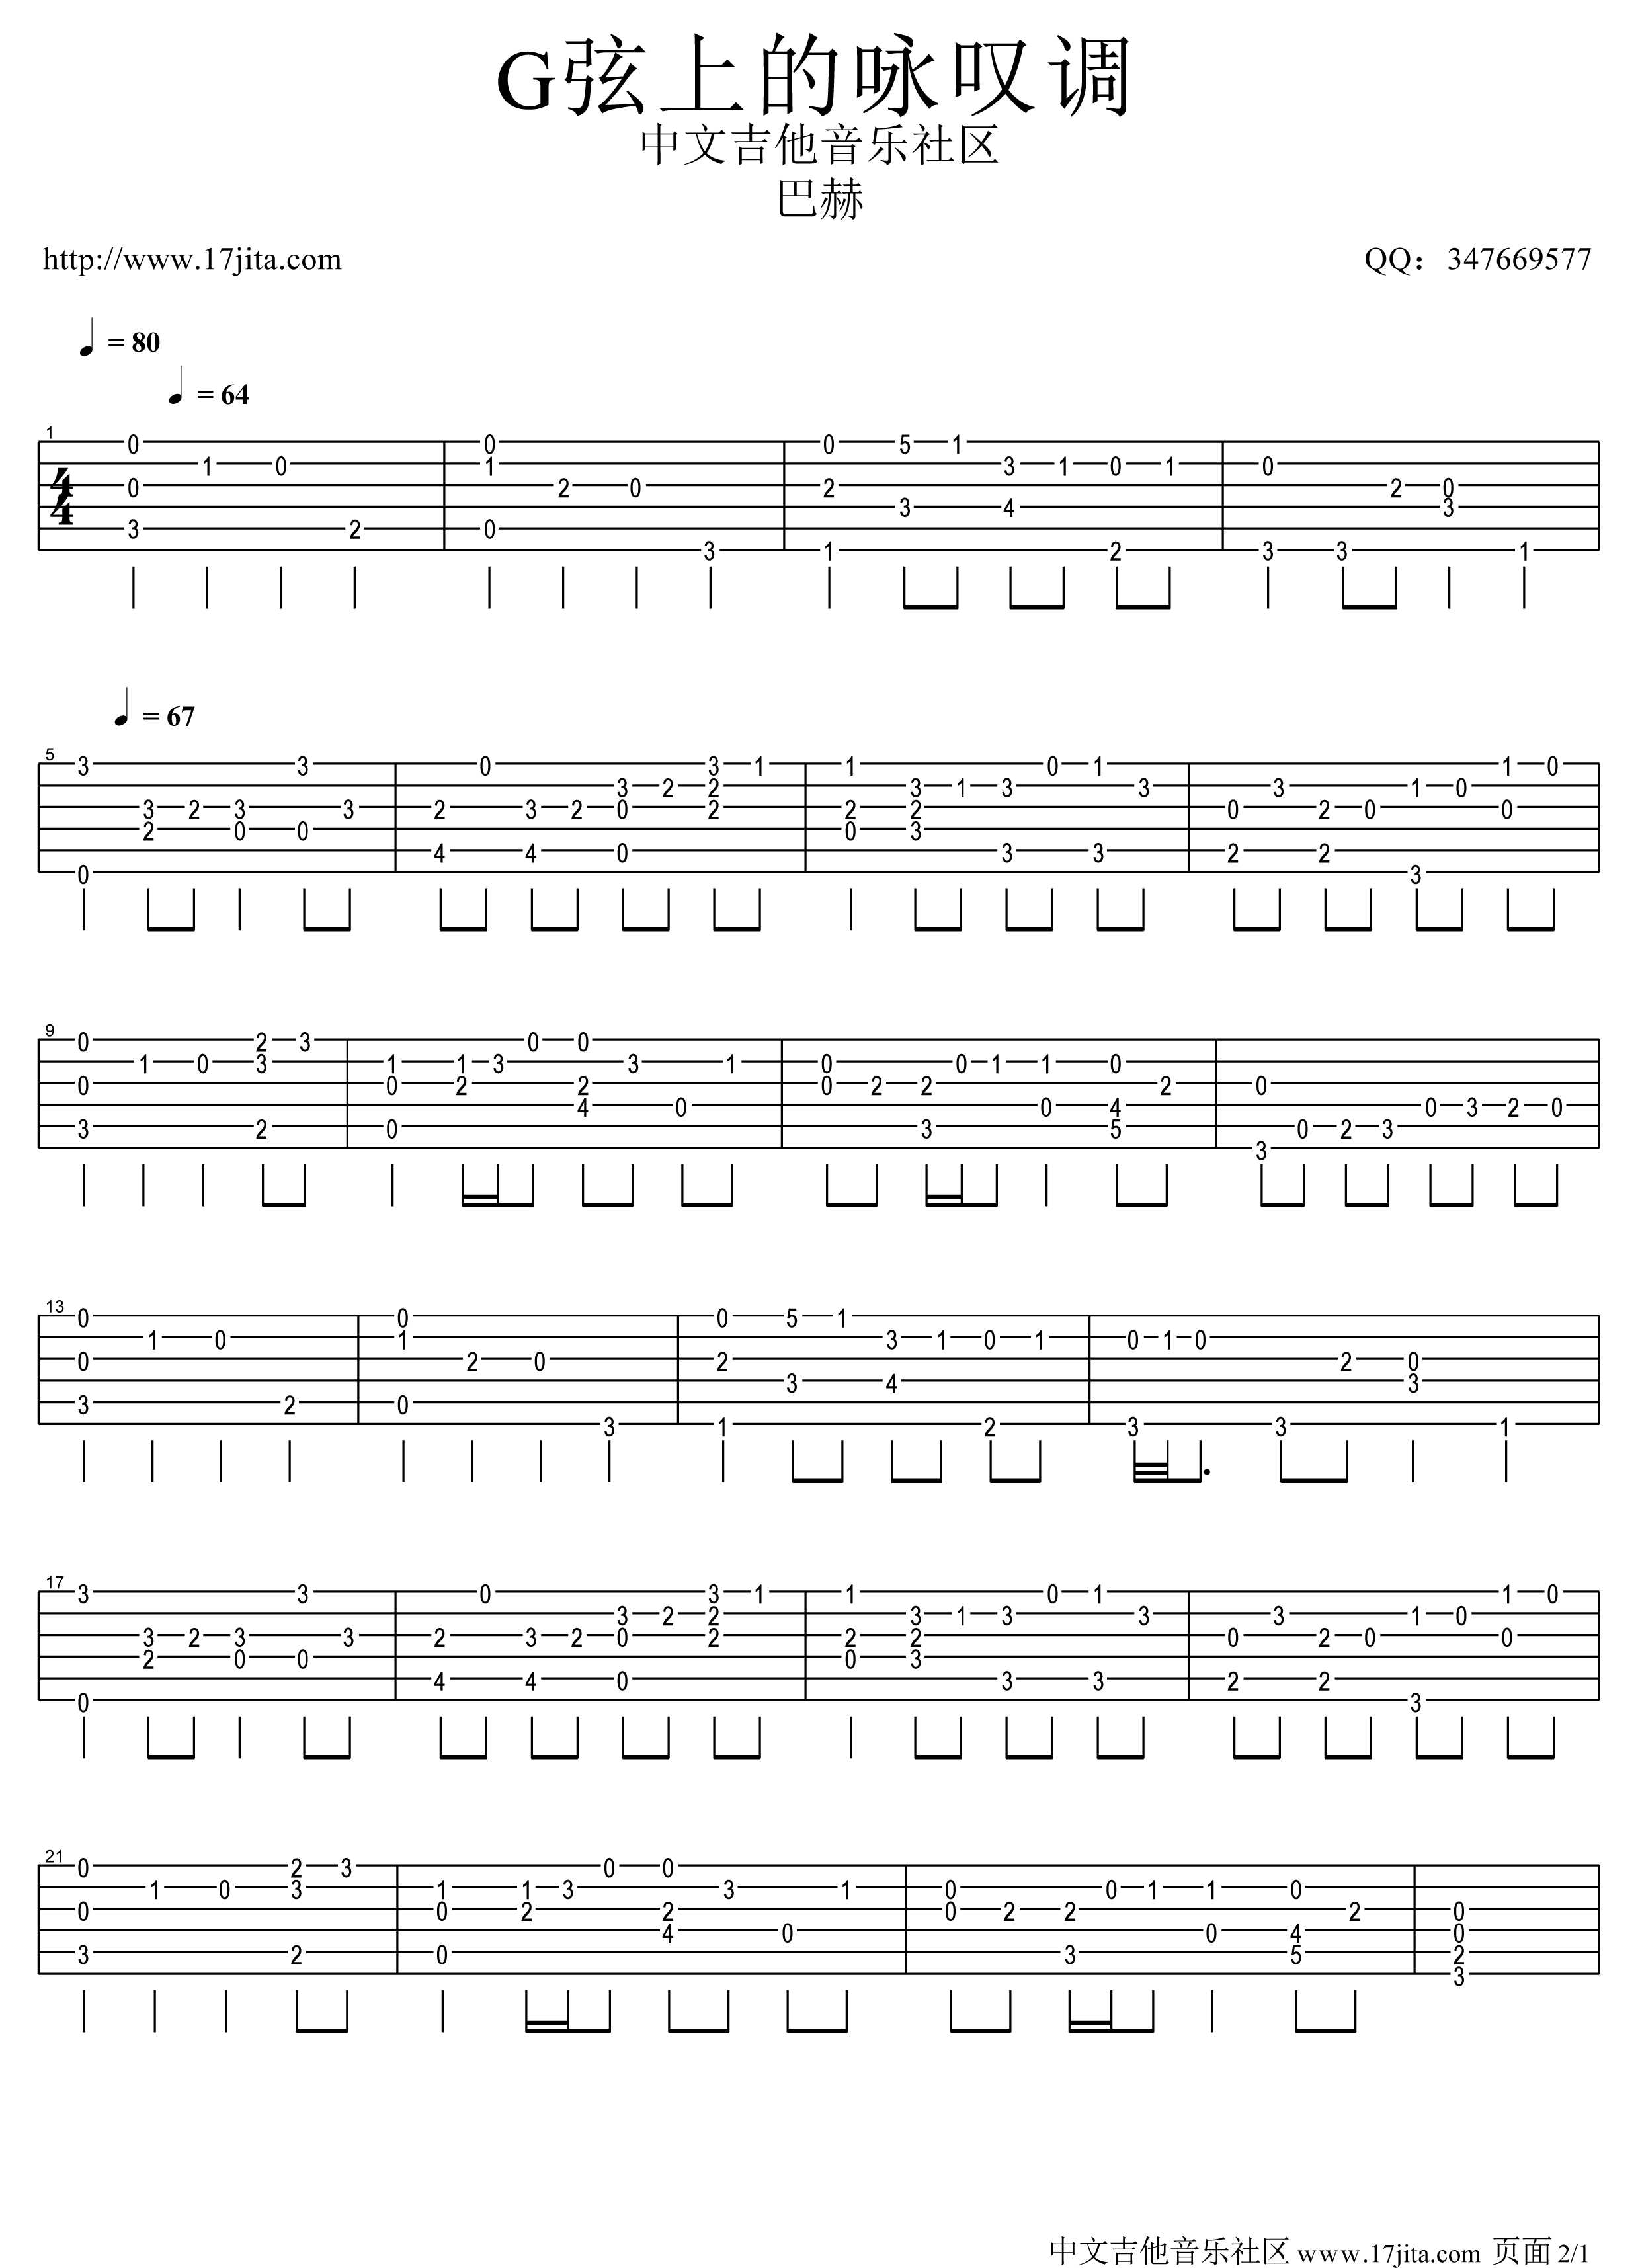 諧谑曲 25-巴赫初級鋼琴曲集雙手簡譜預覽-EOP線上樂譜架